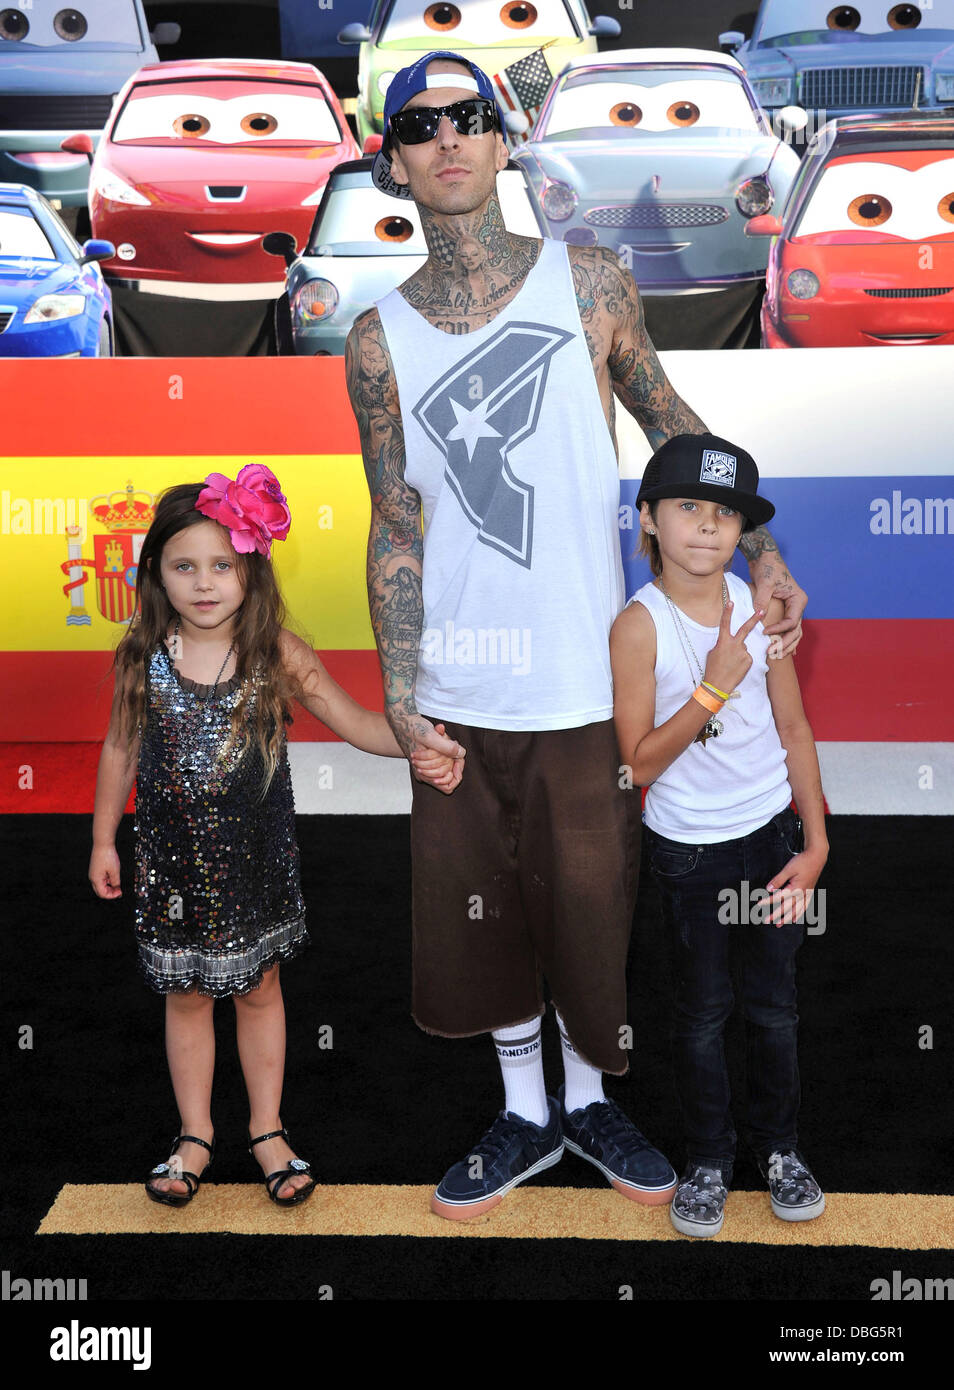 Travis Barker und seine Kinder The Los Angeles Premiere von "Cars 2" im El Capitan Theatre - Ankünfte Los Angeles, Kalifornien - 18.06.11 statt Stockfoto